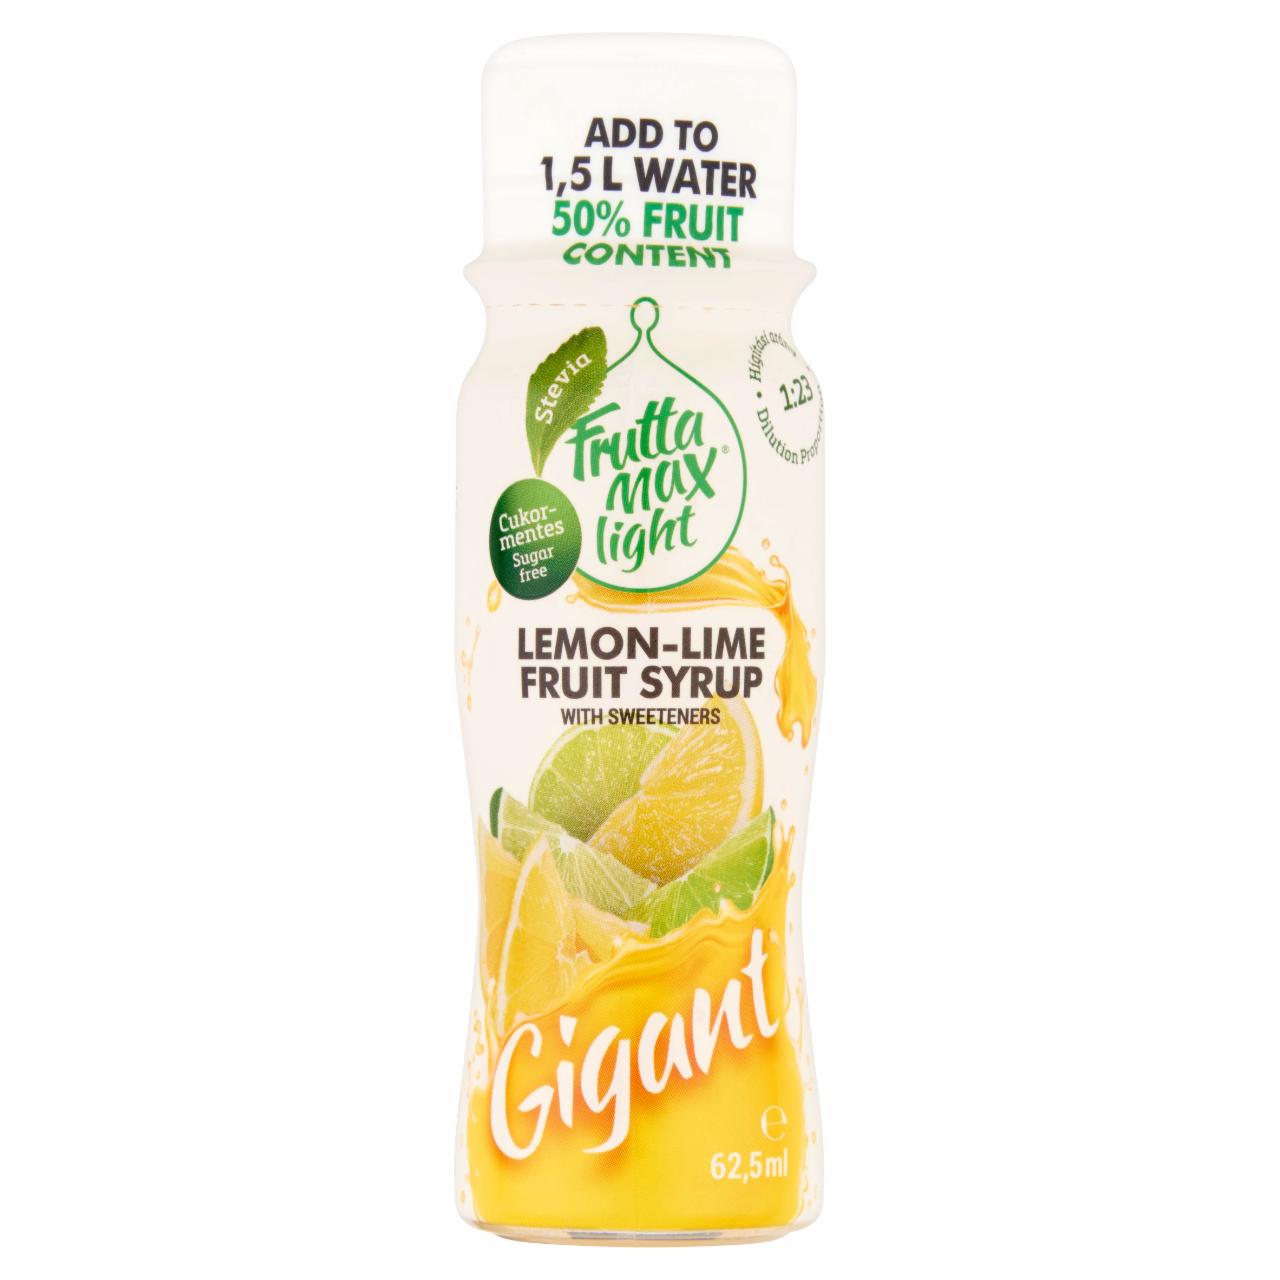 Képek - FruttaMax Gigant cukormentes citrom-lime gyümölcsszörp édesítőszerekkel 62,5 ml